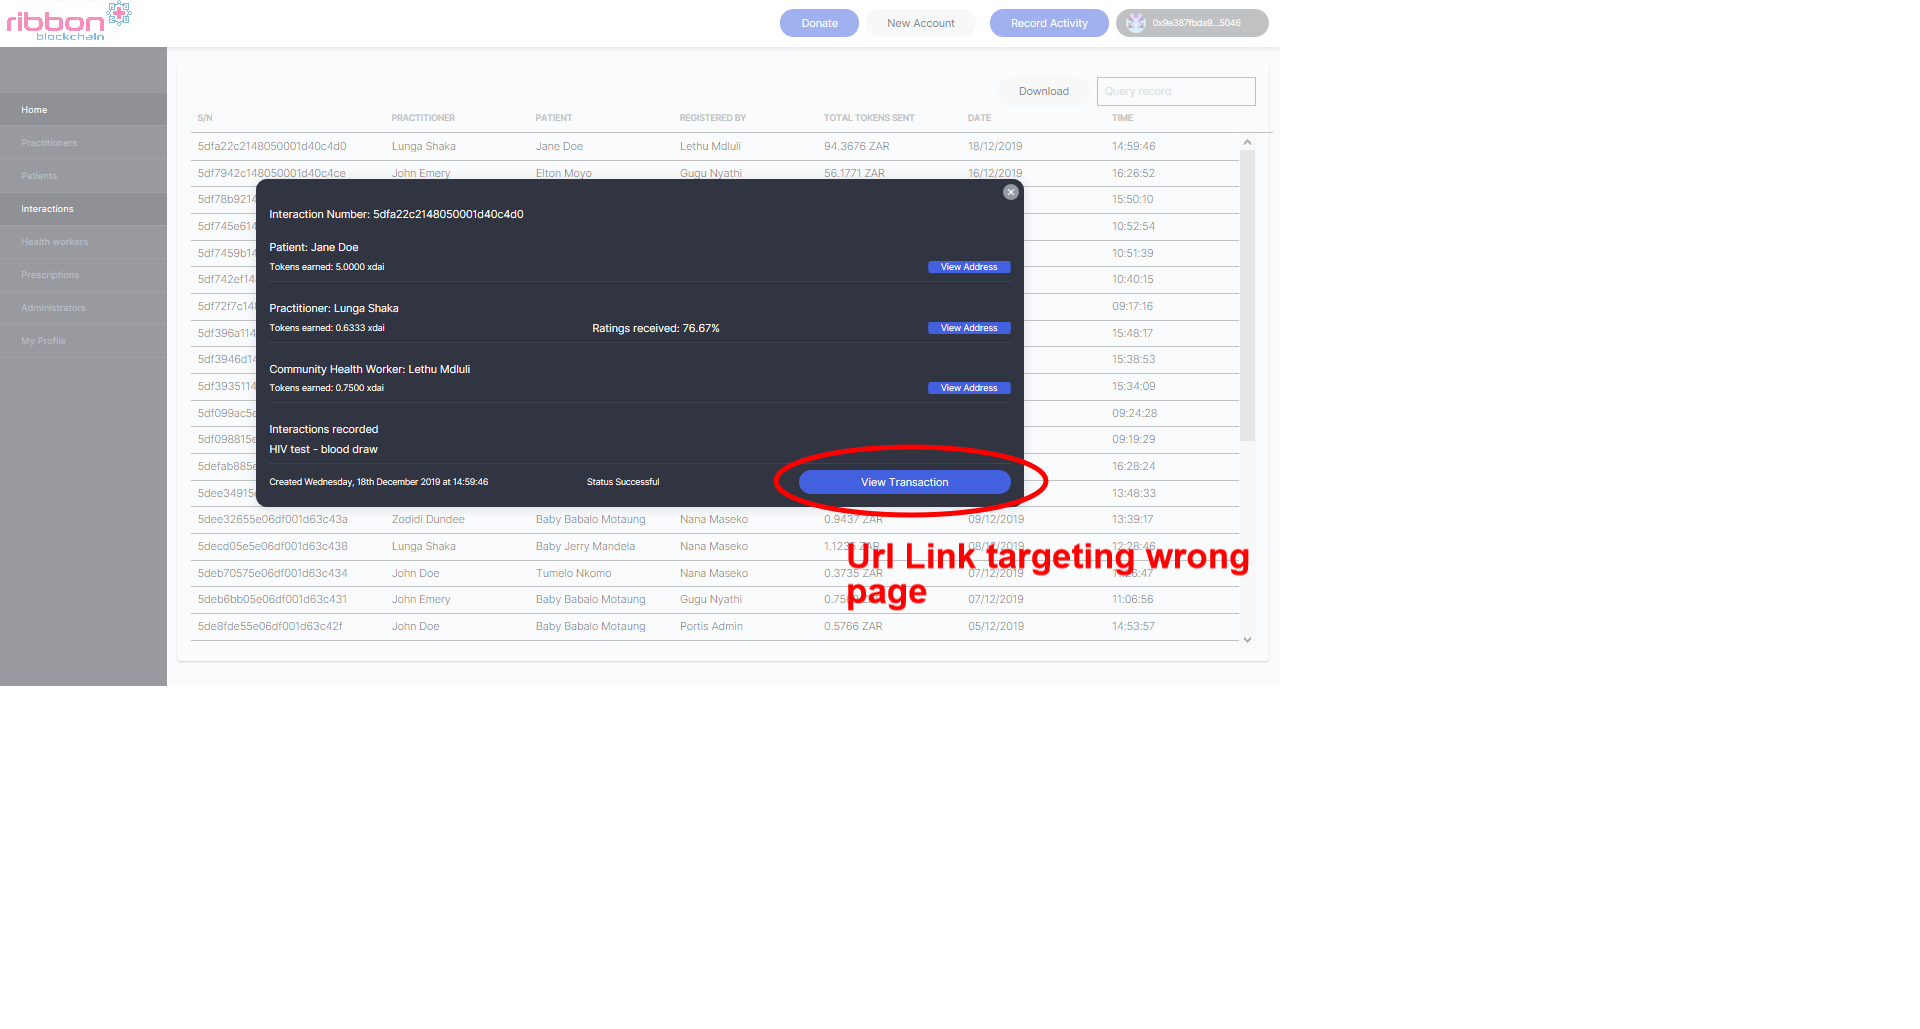 screenshot-dapp-staging.ribbonblockchain.com-2019.12.18-15_07_20.png